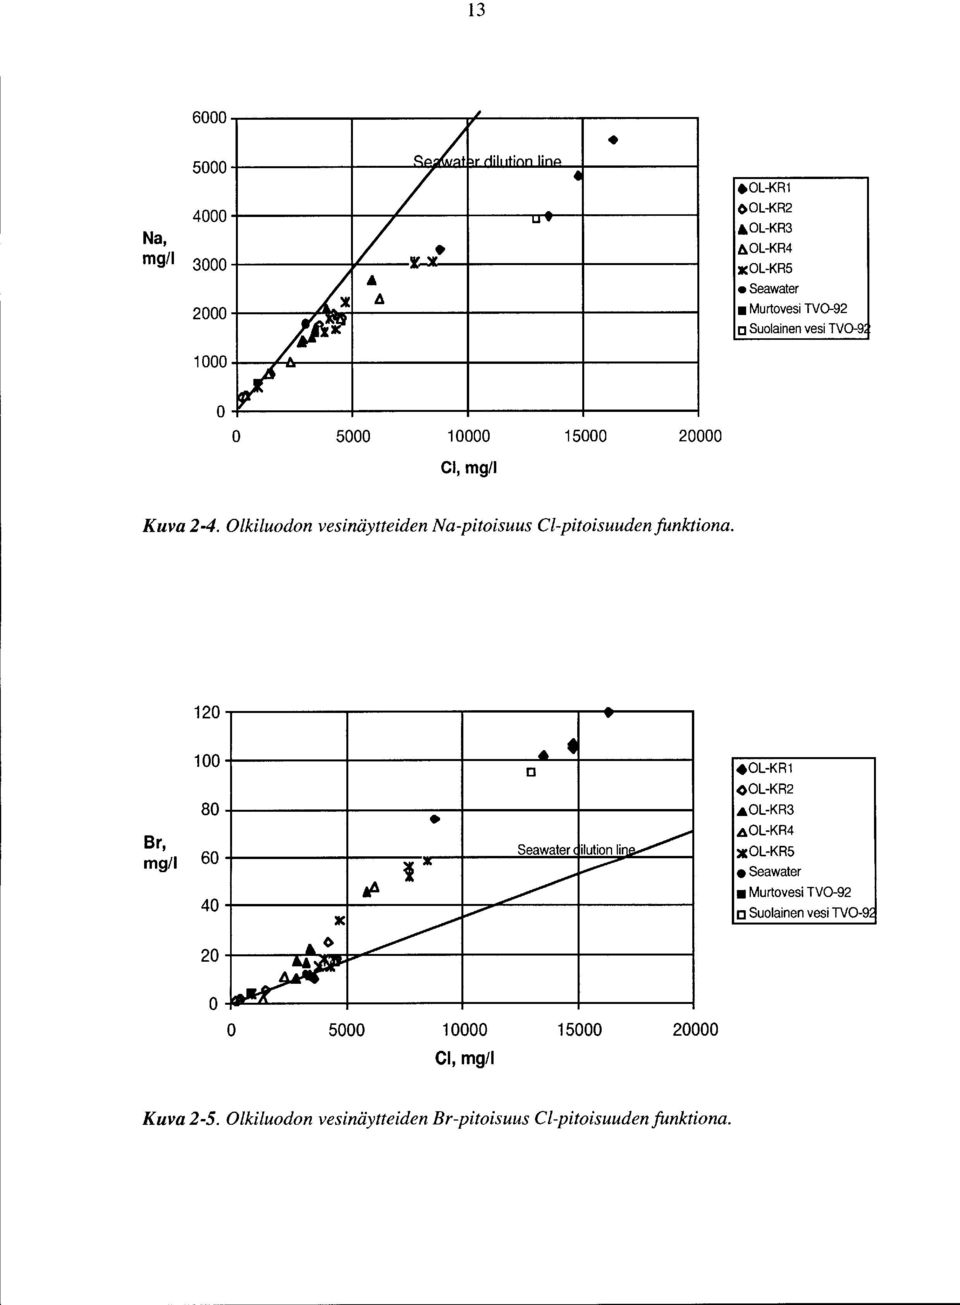 Olkiluodon vesinäytteiden Na-pitoisuus el-pitoisuuden funktiona. 12 Br, mg/1 1 8 6 4 2.OL-KR1 L-KR2.